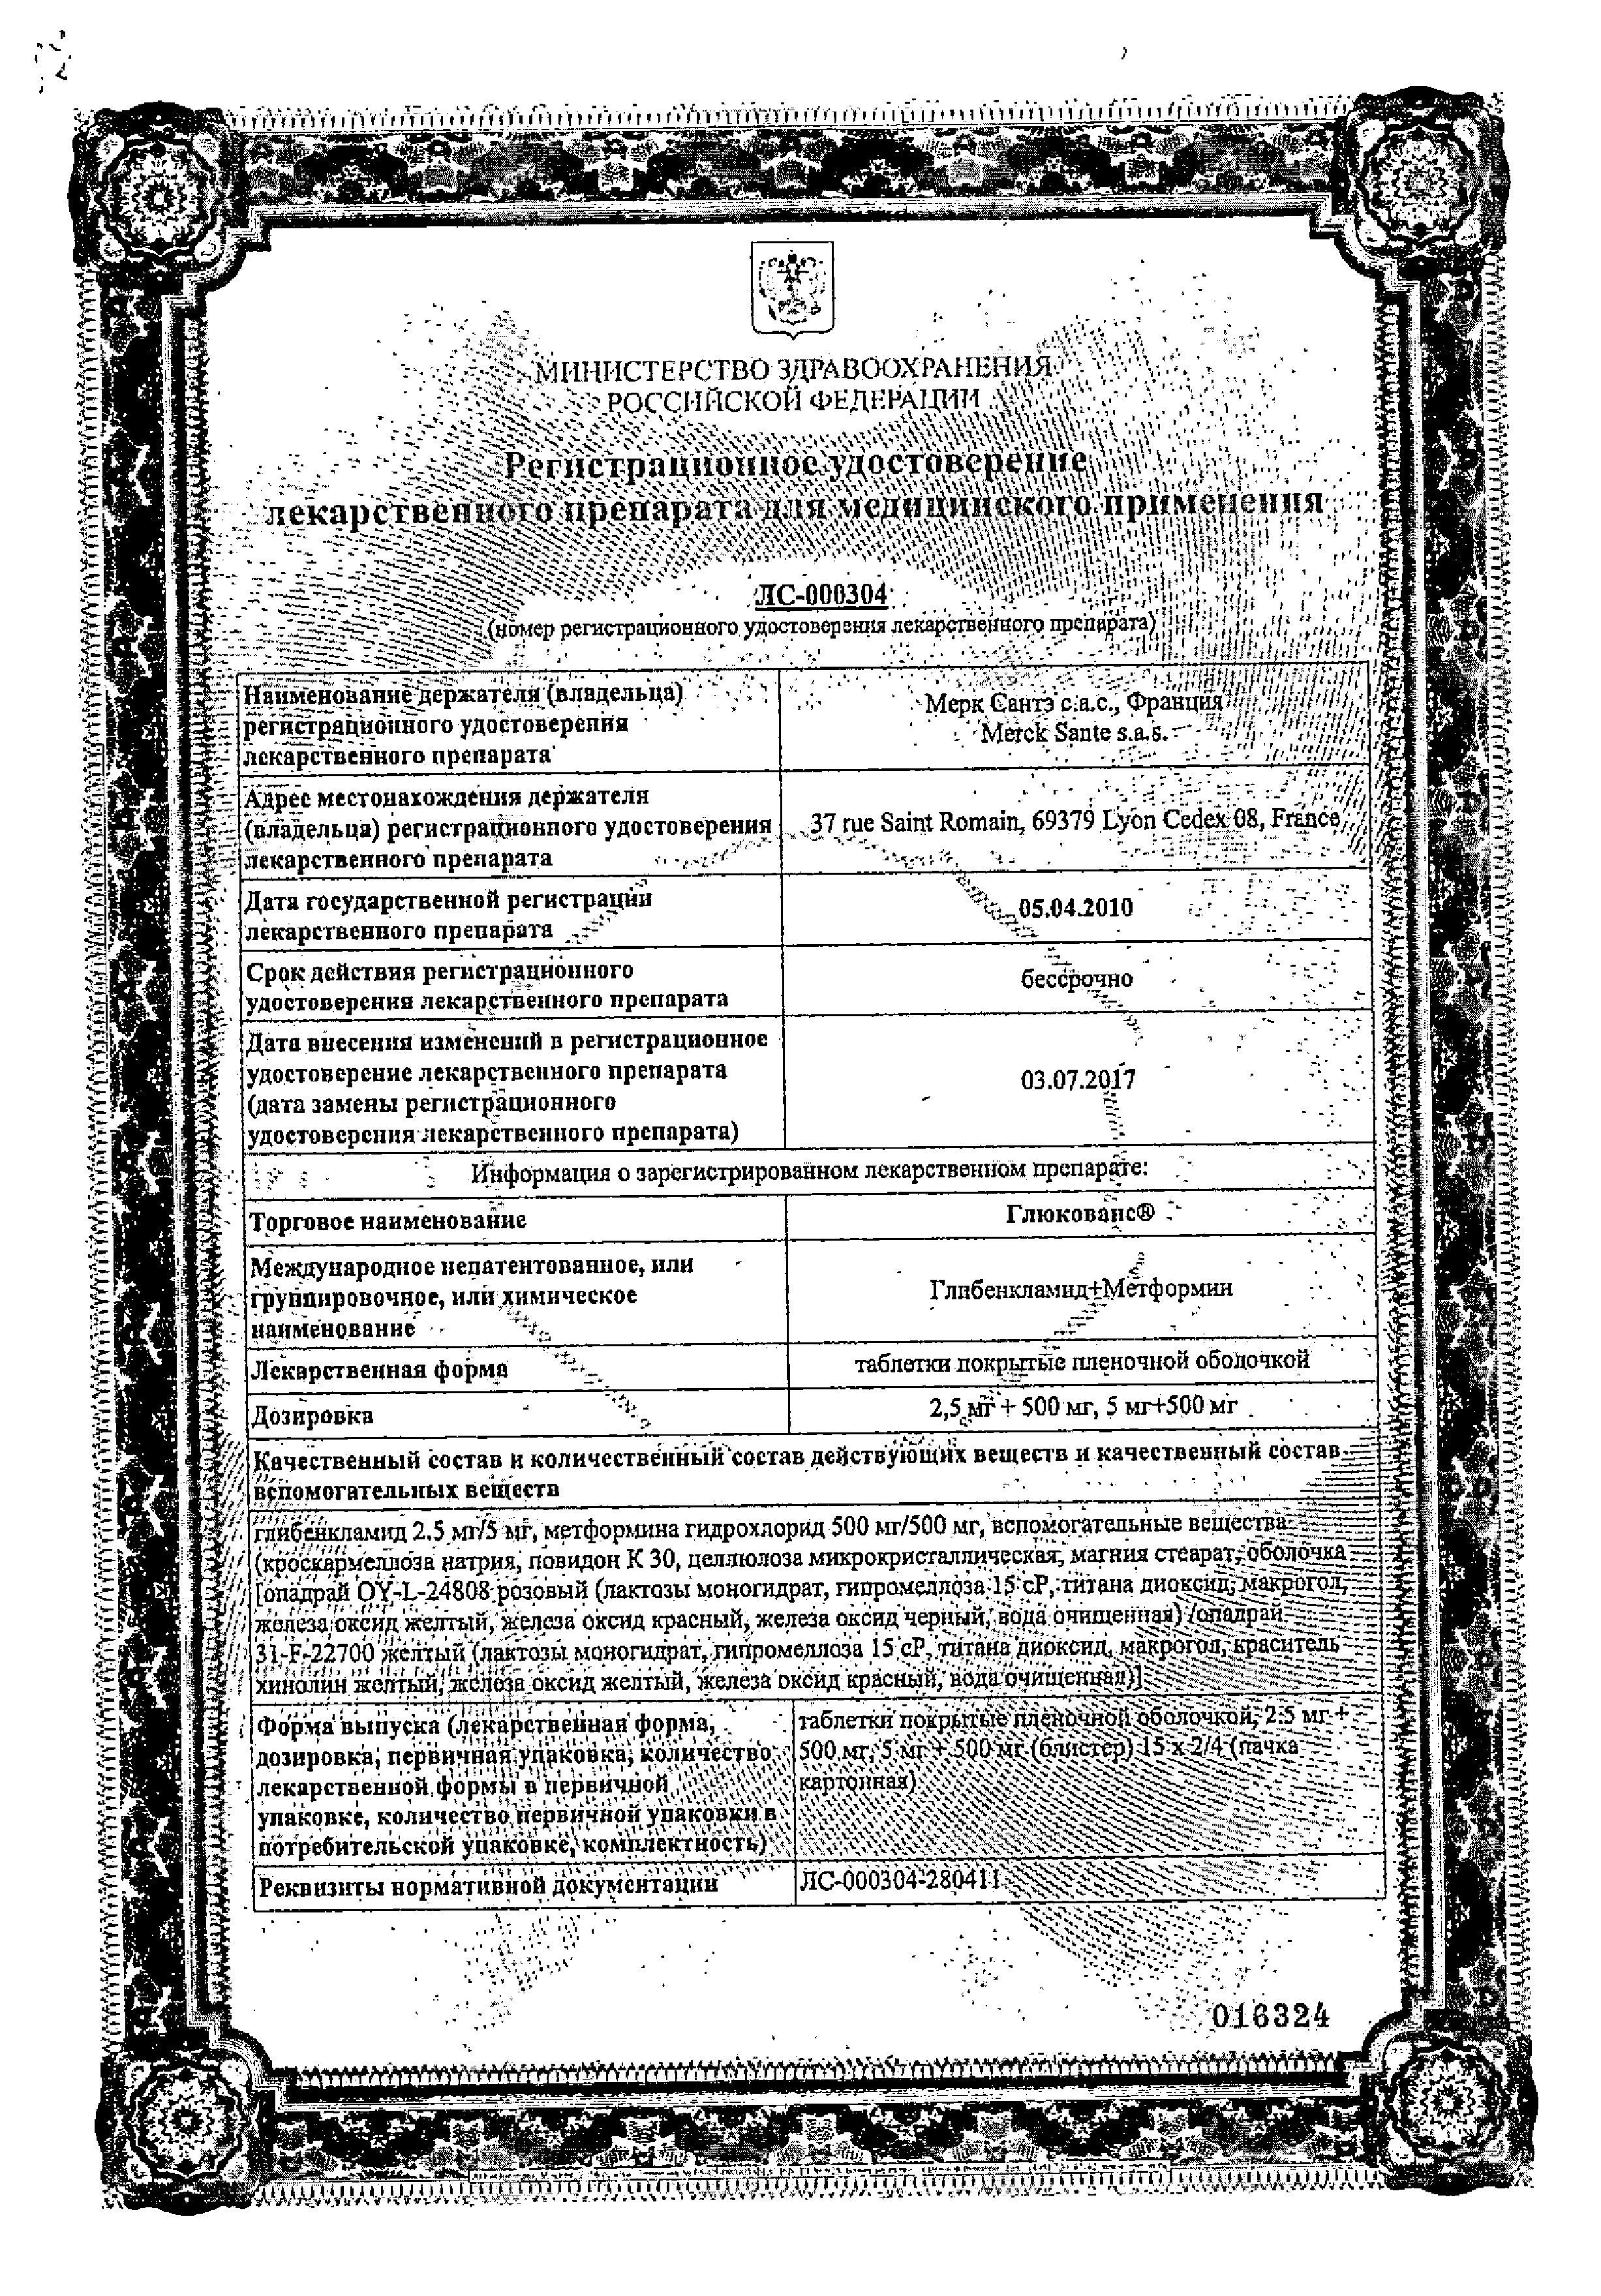 Глюкованс сертификат